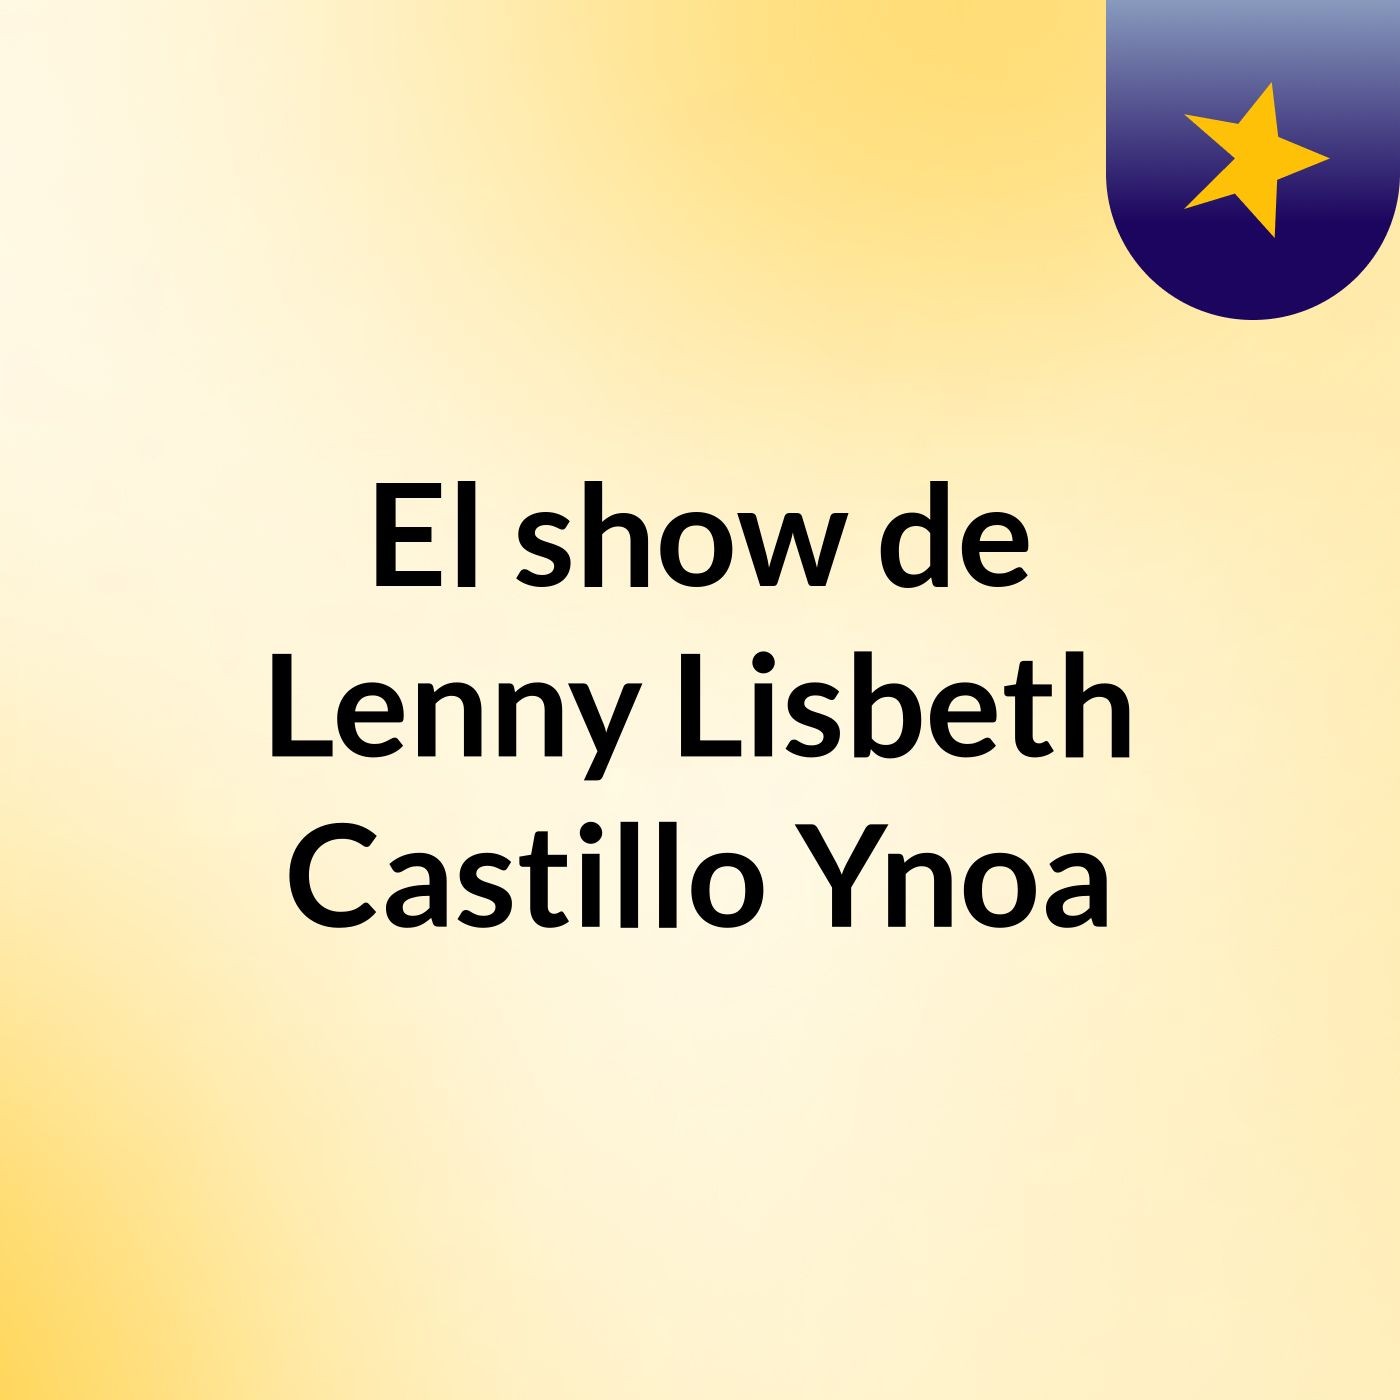 El show de Lenny Lisbeth Castillo Ynoa